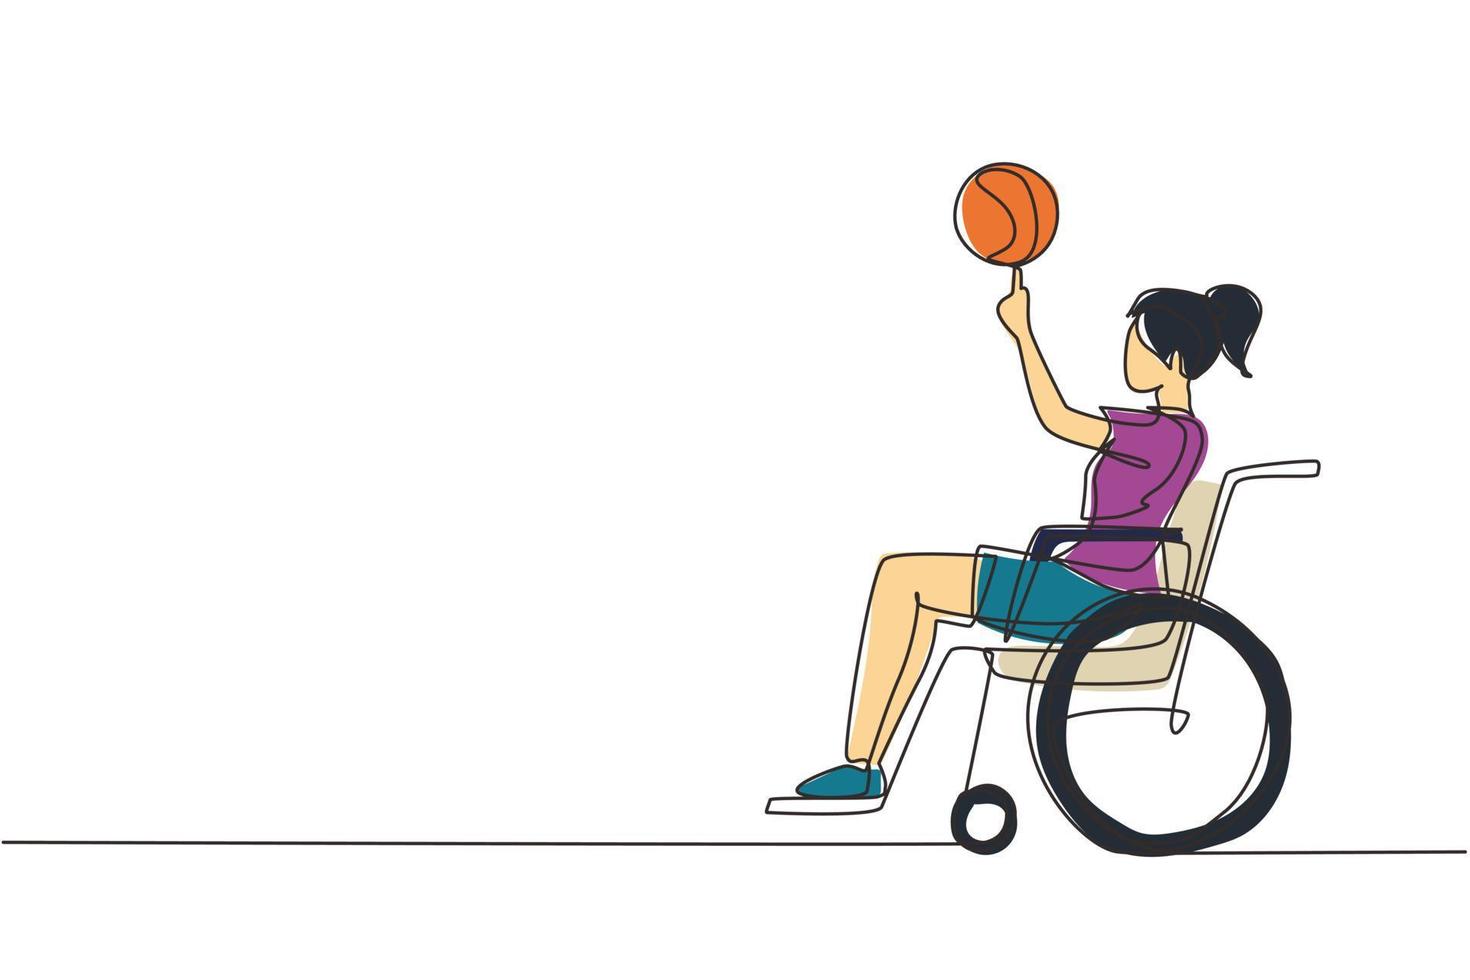 durchgehende einzeilige zeichnung süßes mädchen im rollstuhl spielt basketball. behinderte Person dreht Basketball an ihrem Finger. Bewegung für Menschen mit Behinderungen. einzeiliges zeichnen design vektorillustration vektor